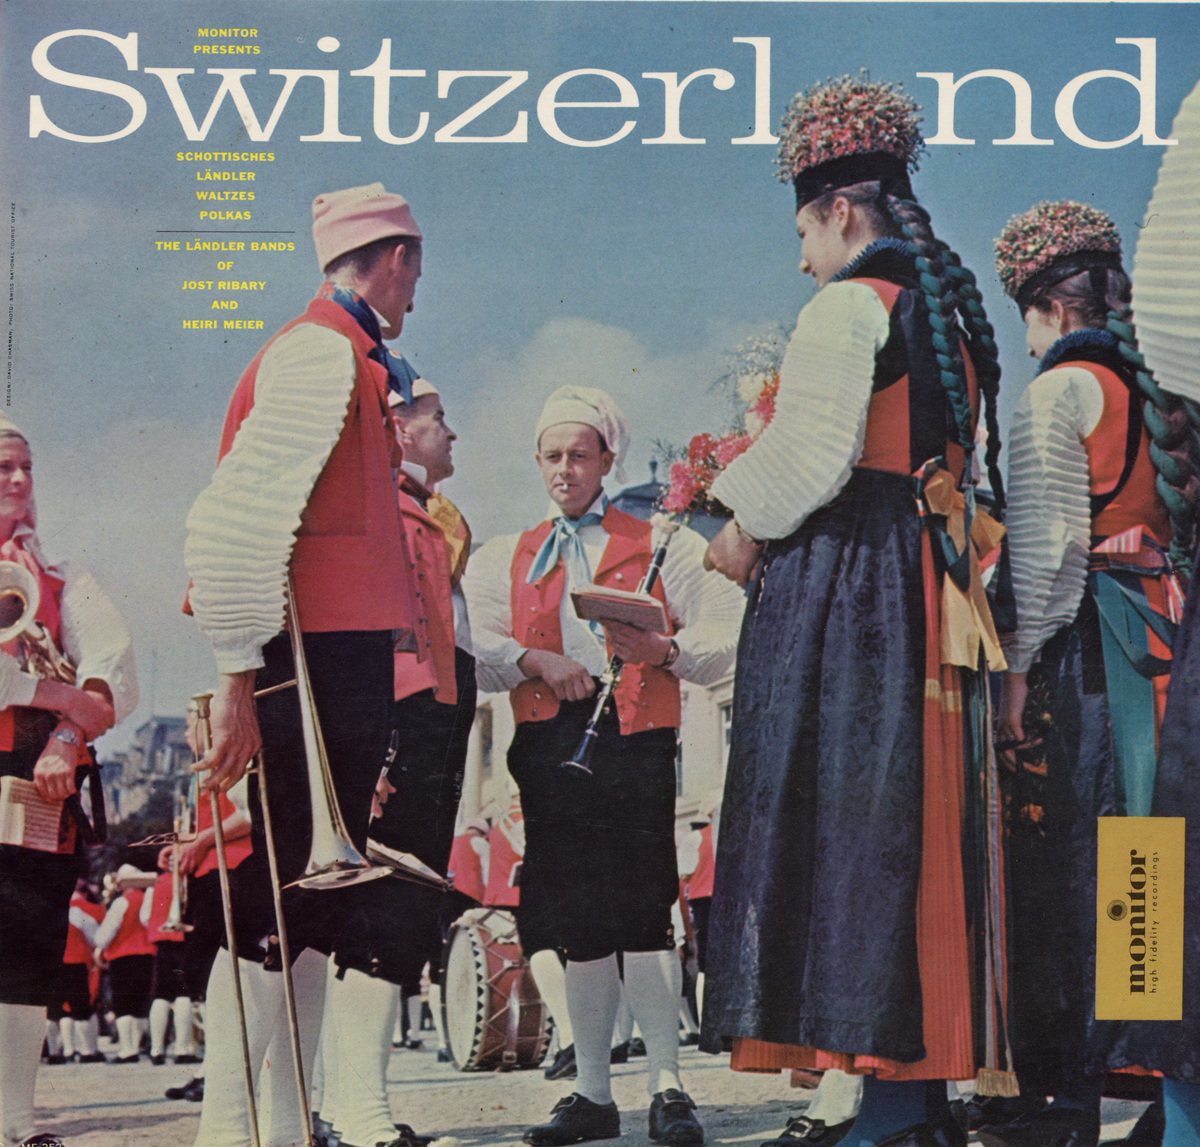 SWITZERLAND: SCHOTTISCHES LANDLER WALTZES